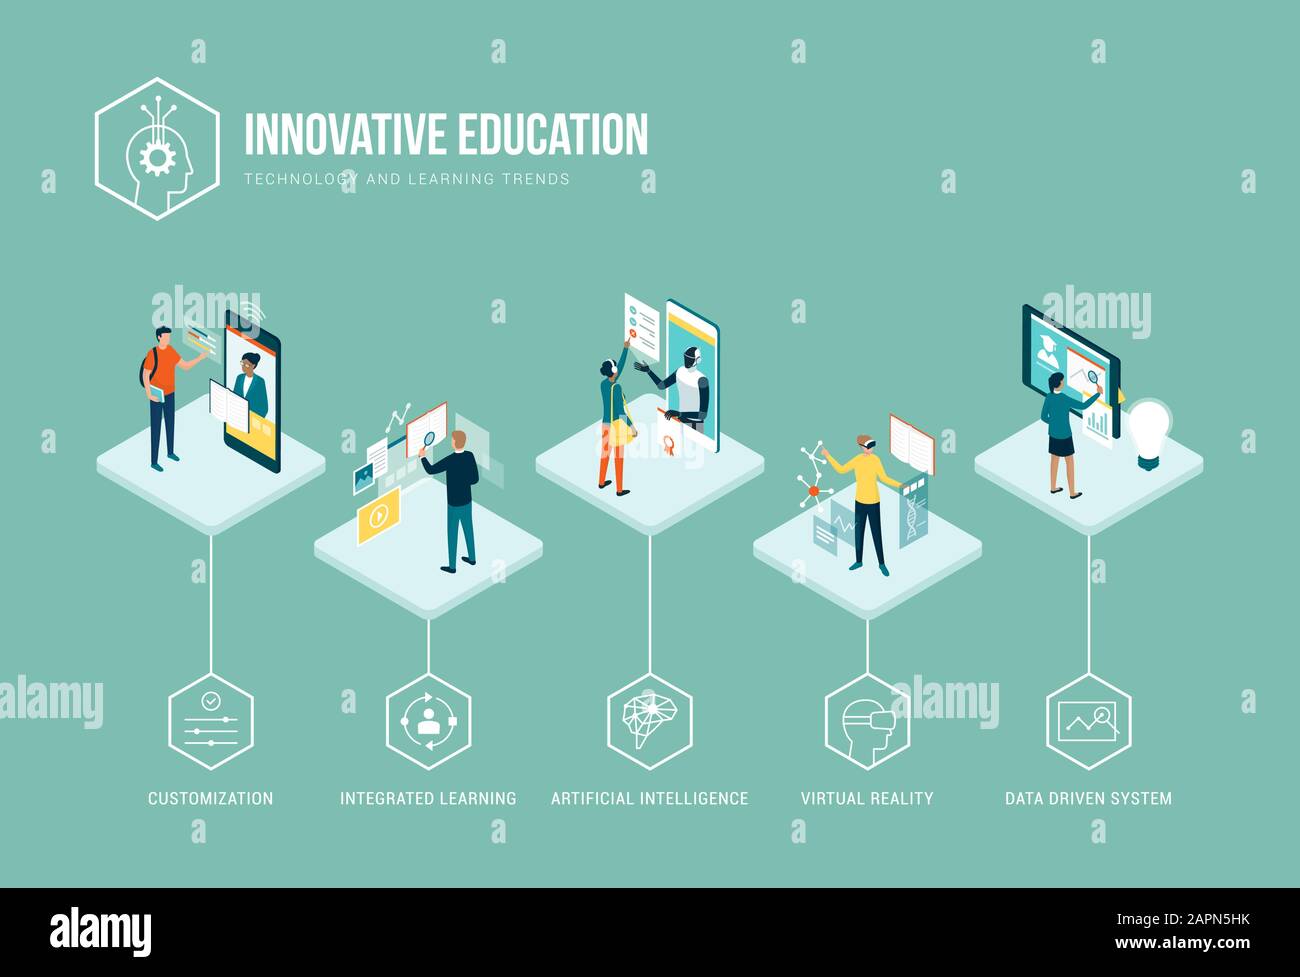 Infografik zu innovativen Bildungstrends: Personalisierung, integriertes Lernen, KI, VR und datengesteuerte Systeme Stock Vektor